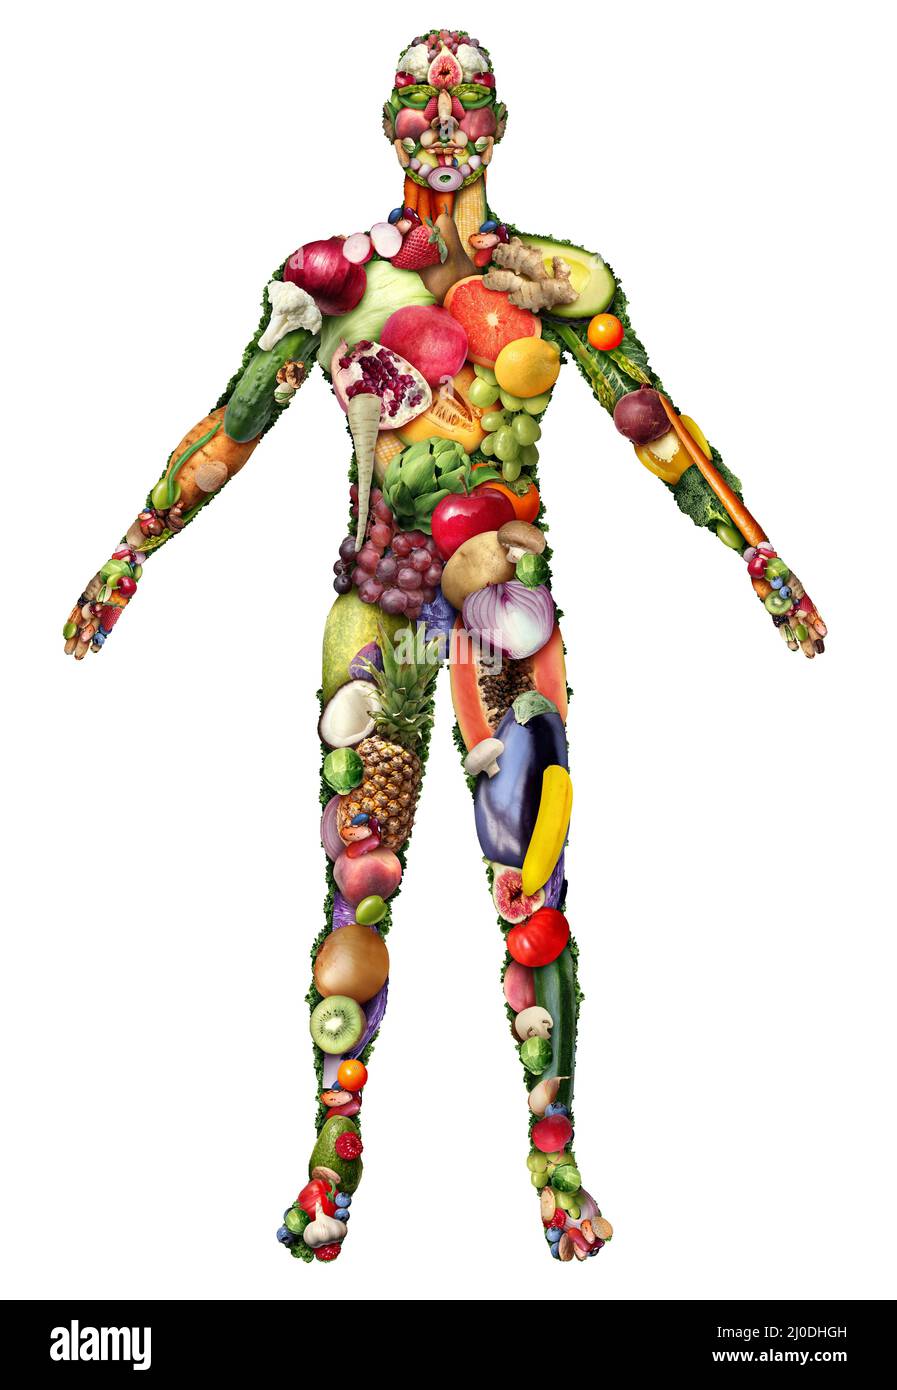 Corps humain fait de fruits et de légumes et manger sain ou vegan et le mode de vie de régime naturel comme un groupe de fruits frais mûrs et noix. Banque D'Images